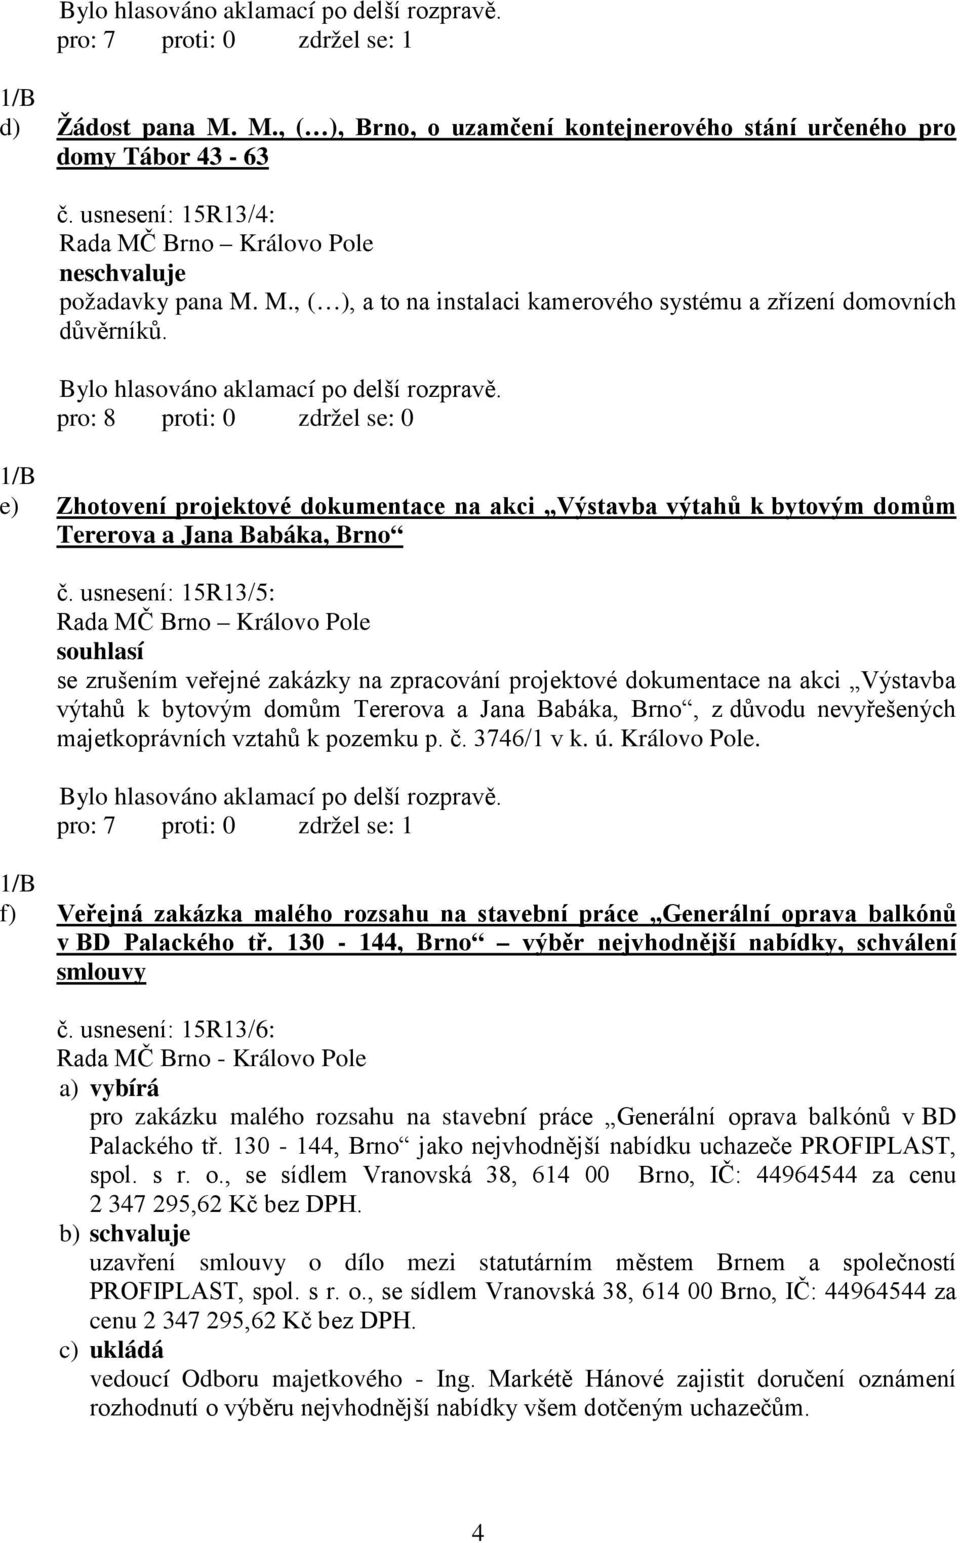 usnesení: 15R13/5: souhlasí se zrušením veřejné zakázky na zpracování projektové dokumentace na akci Výstavba výtahů k bytovým domům Tererova a Jana Babáka, Brno, z důvodu nevyřešených